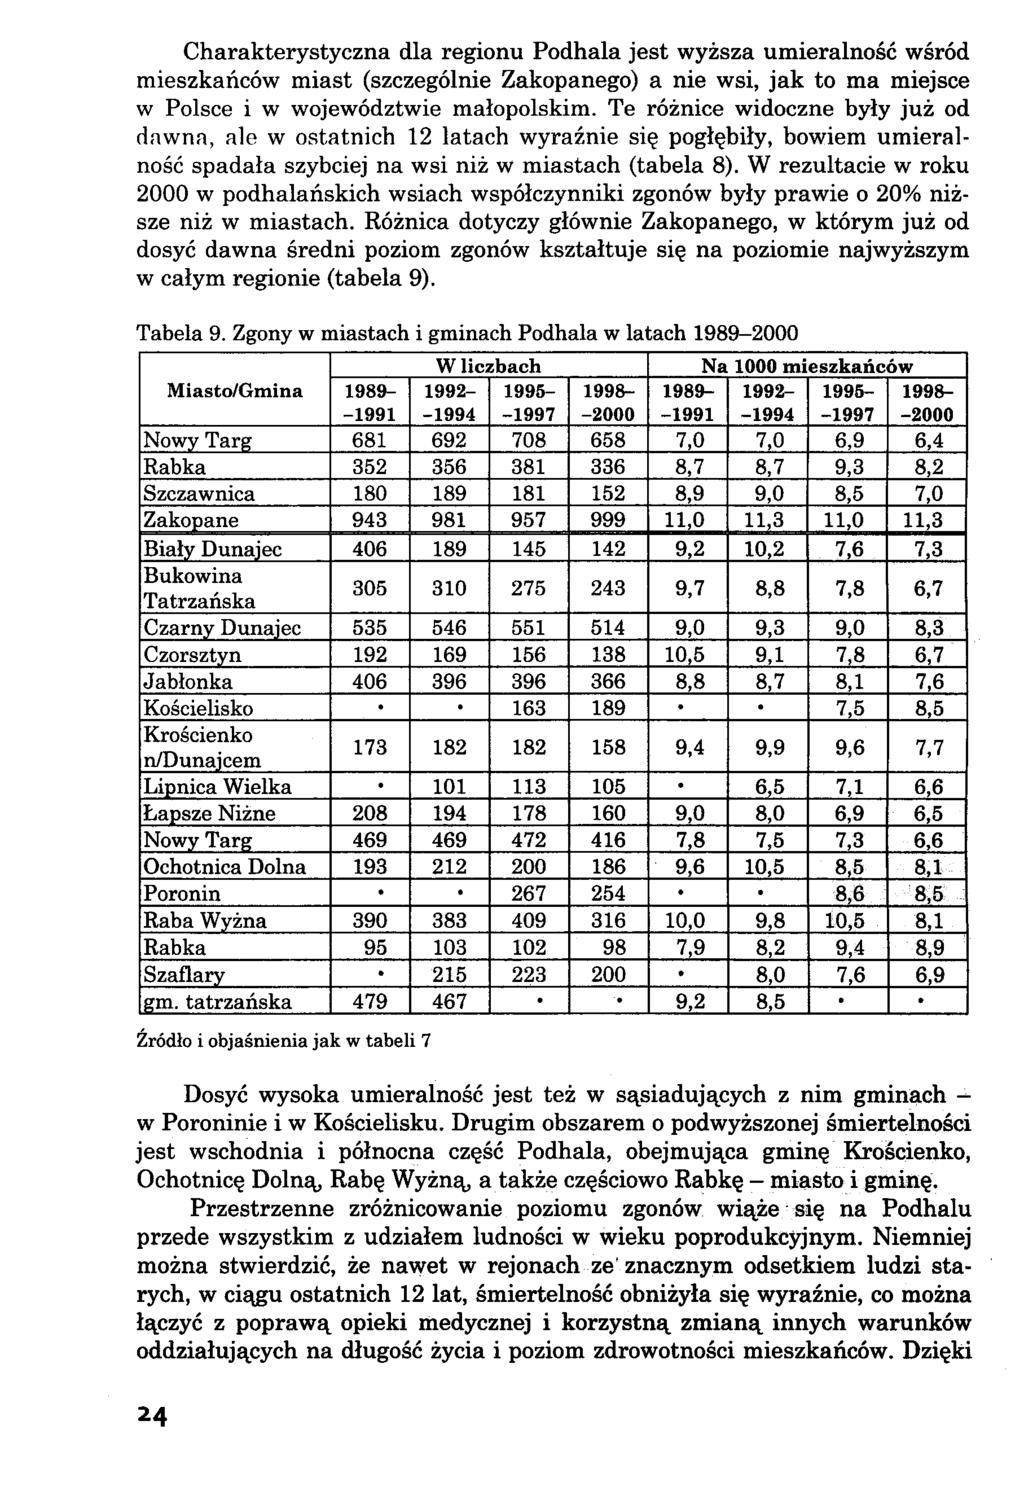 Charakterystyczna dla regionu Podhala jest wyższa umieralność wśród mieszkańców miast (szczególnie Zakopanego) a nie wsi, jak to ma miejsce w Polsce i w województwie małopolskim.